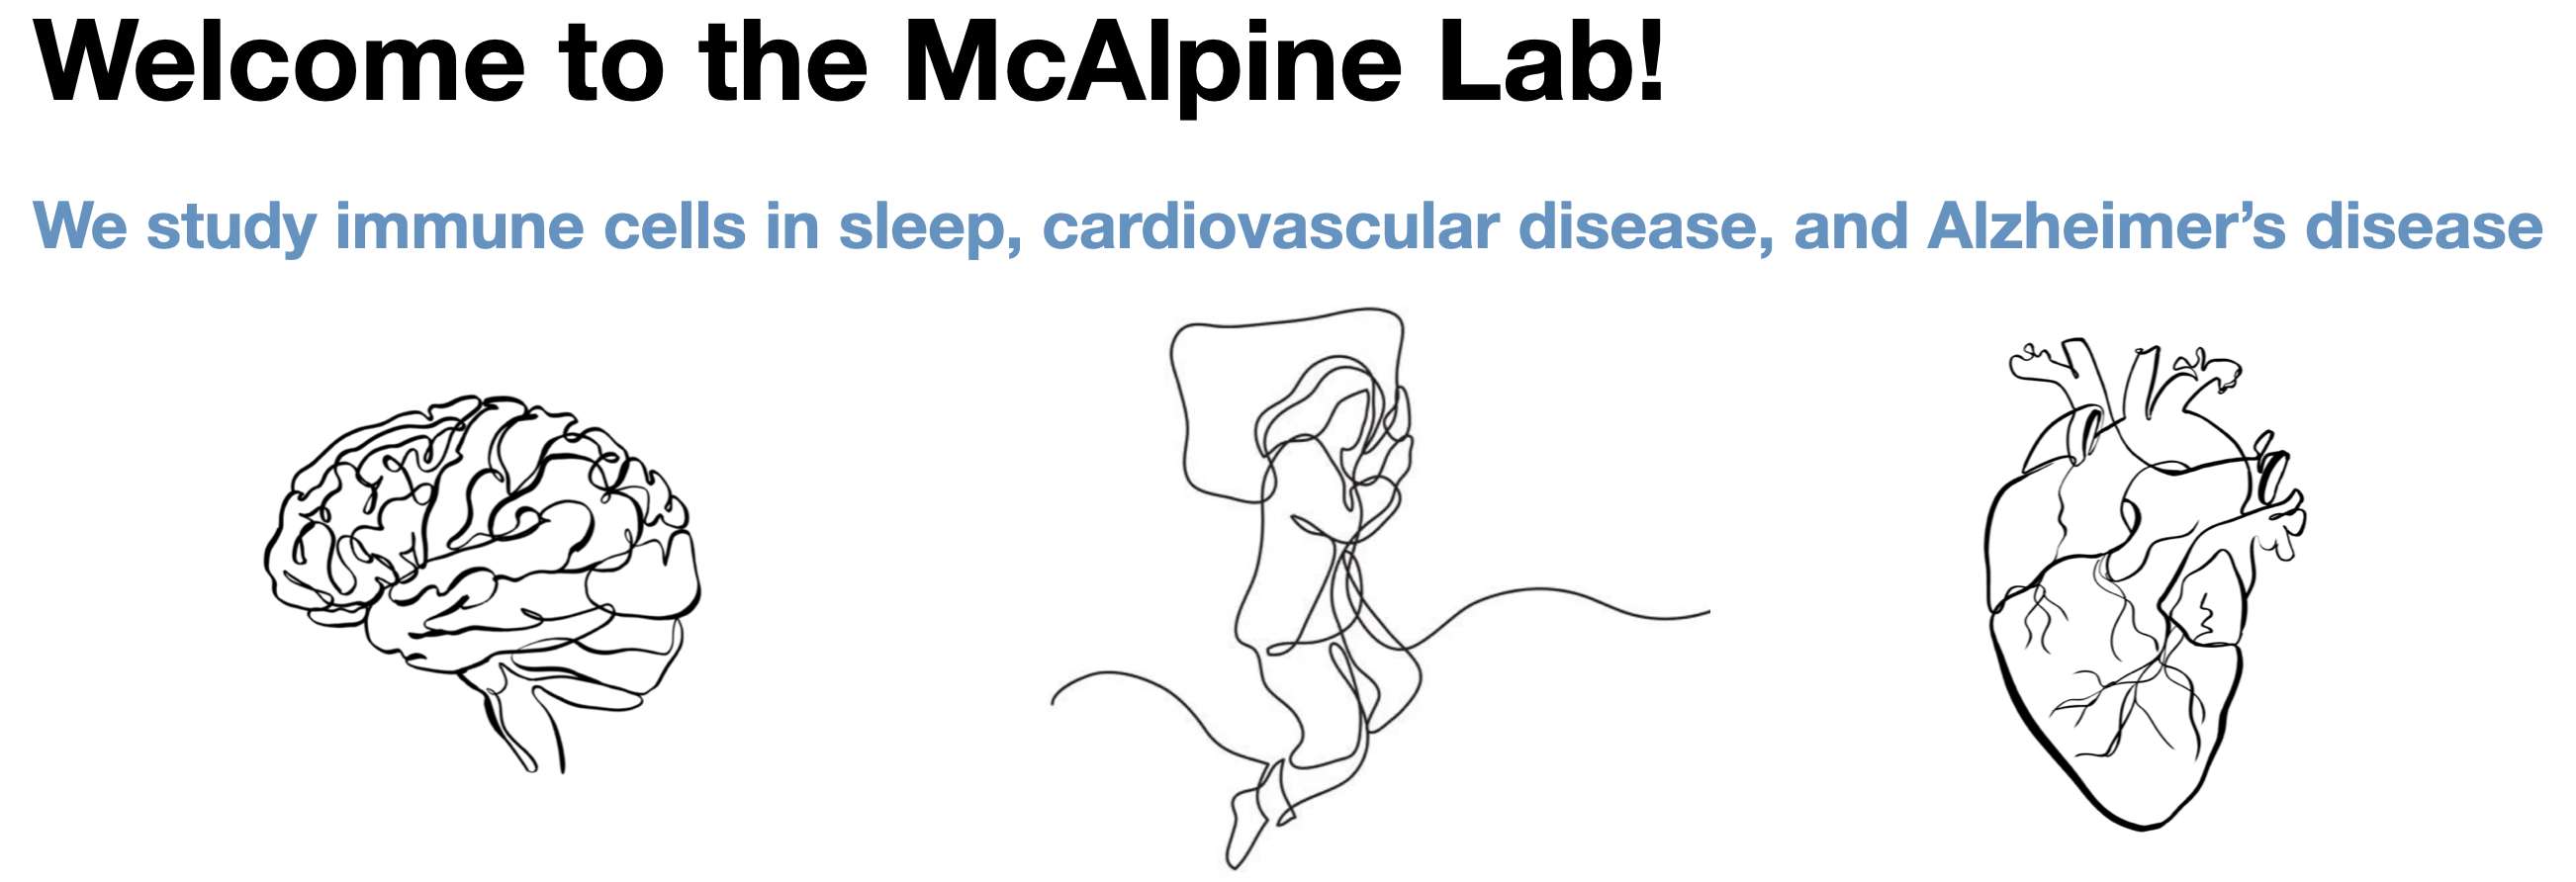 McAlpine Lab